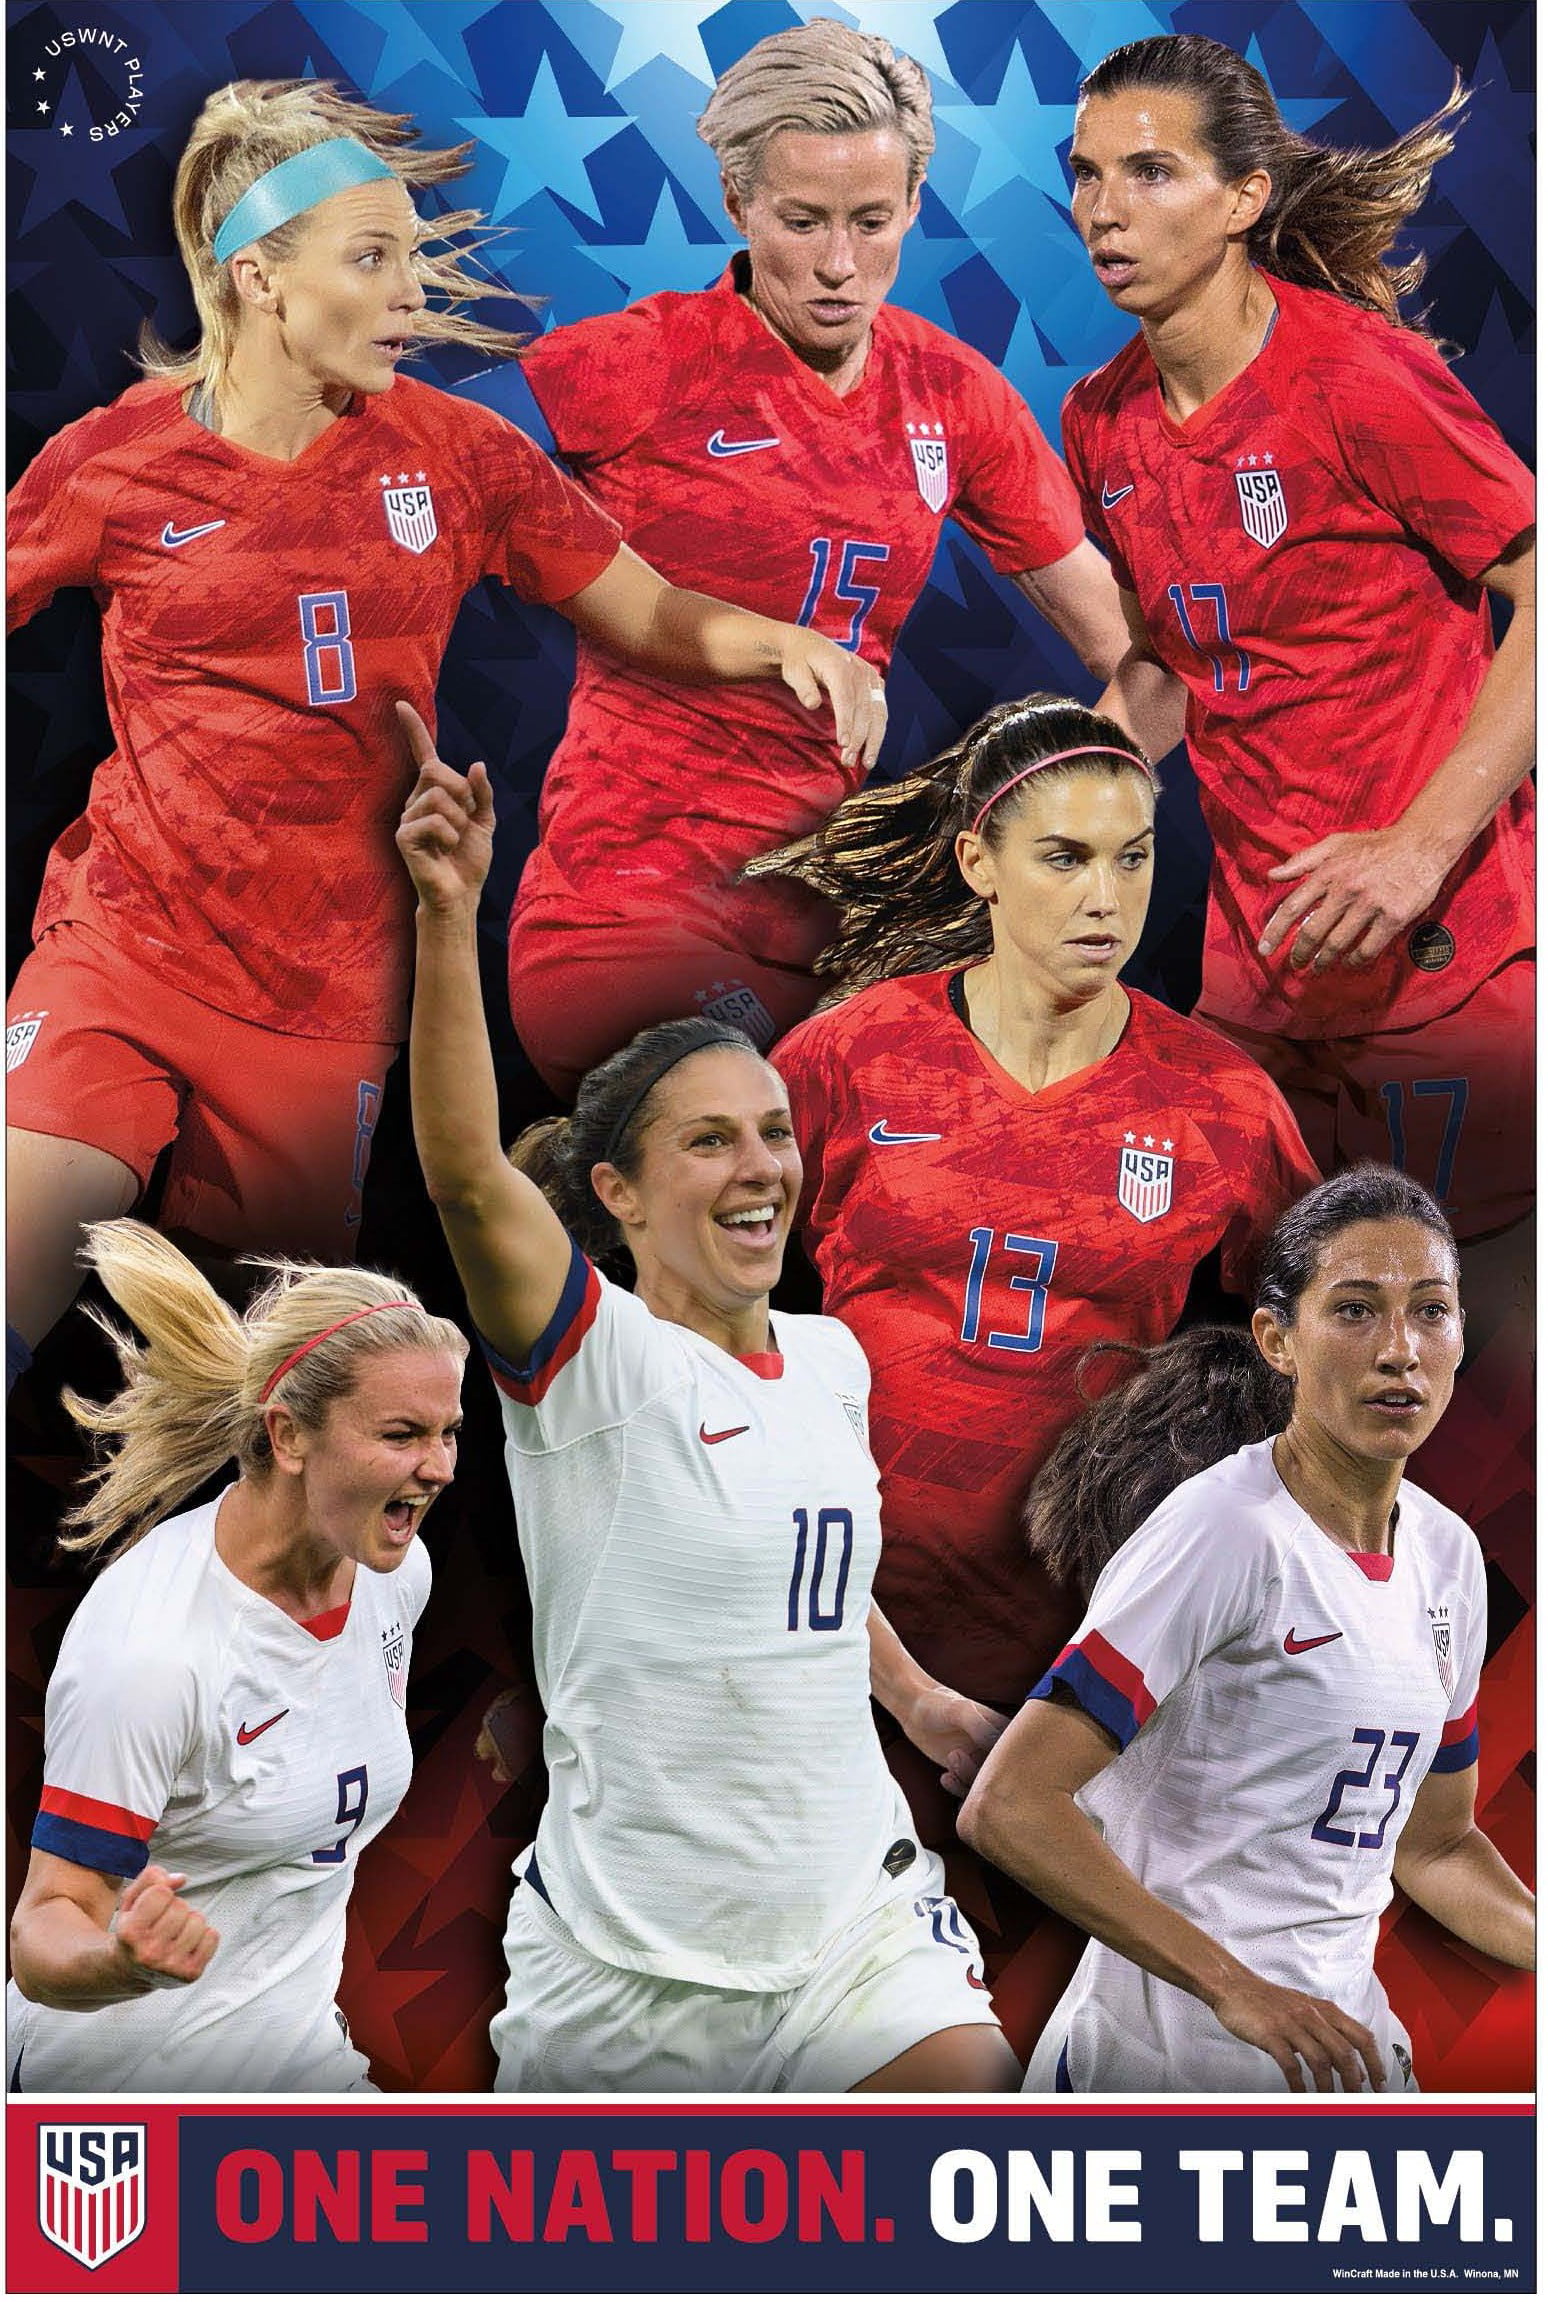 US Women's Soccer Team Poster 2019 | USWNT Poster ...